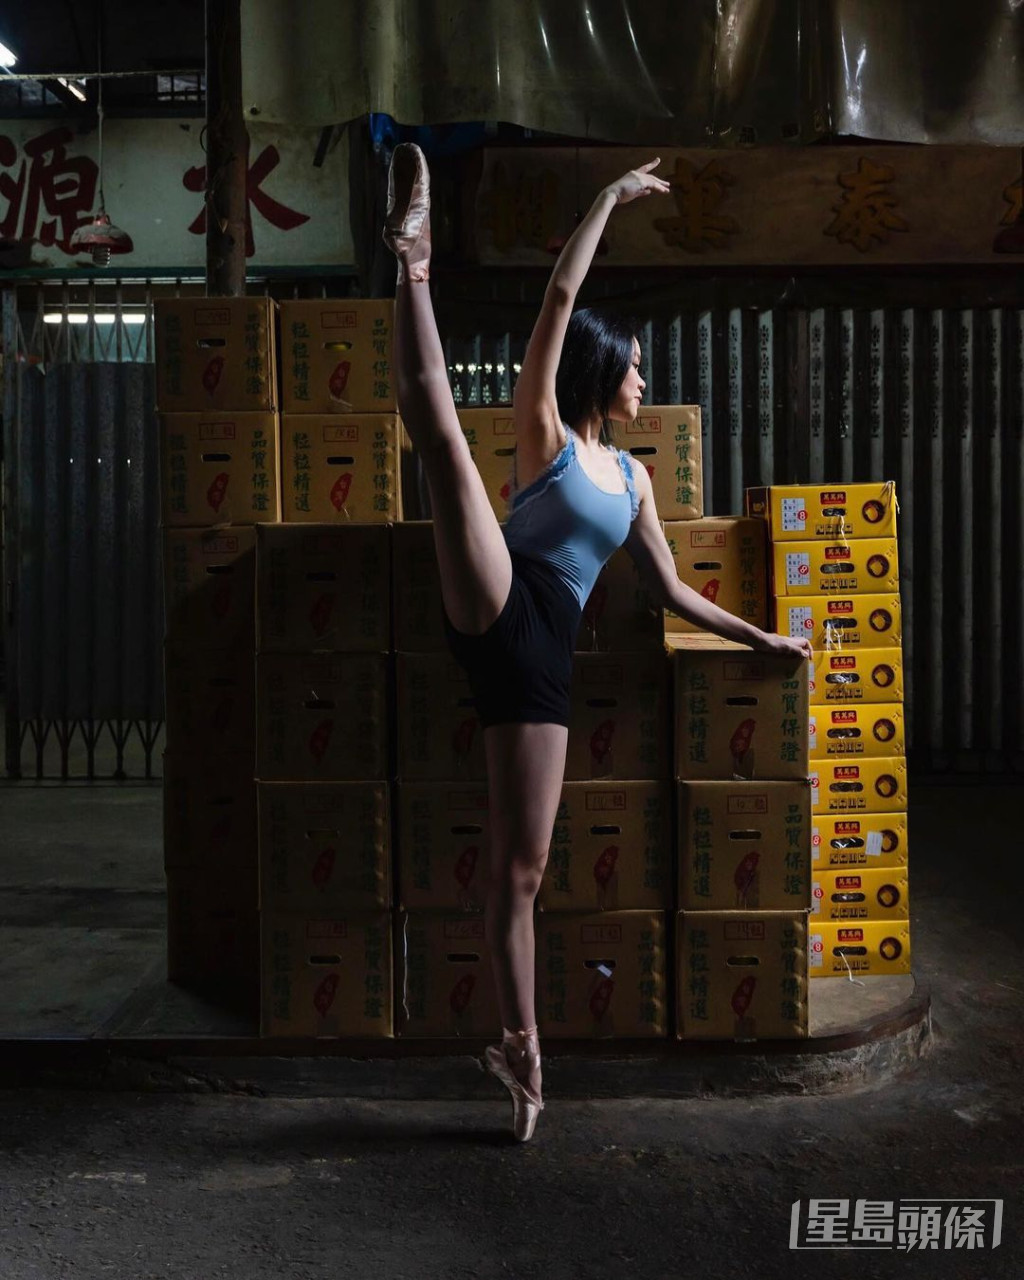 刘秀盈试过去果栏摆芭蕾舞甫士拍硬照。